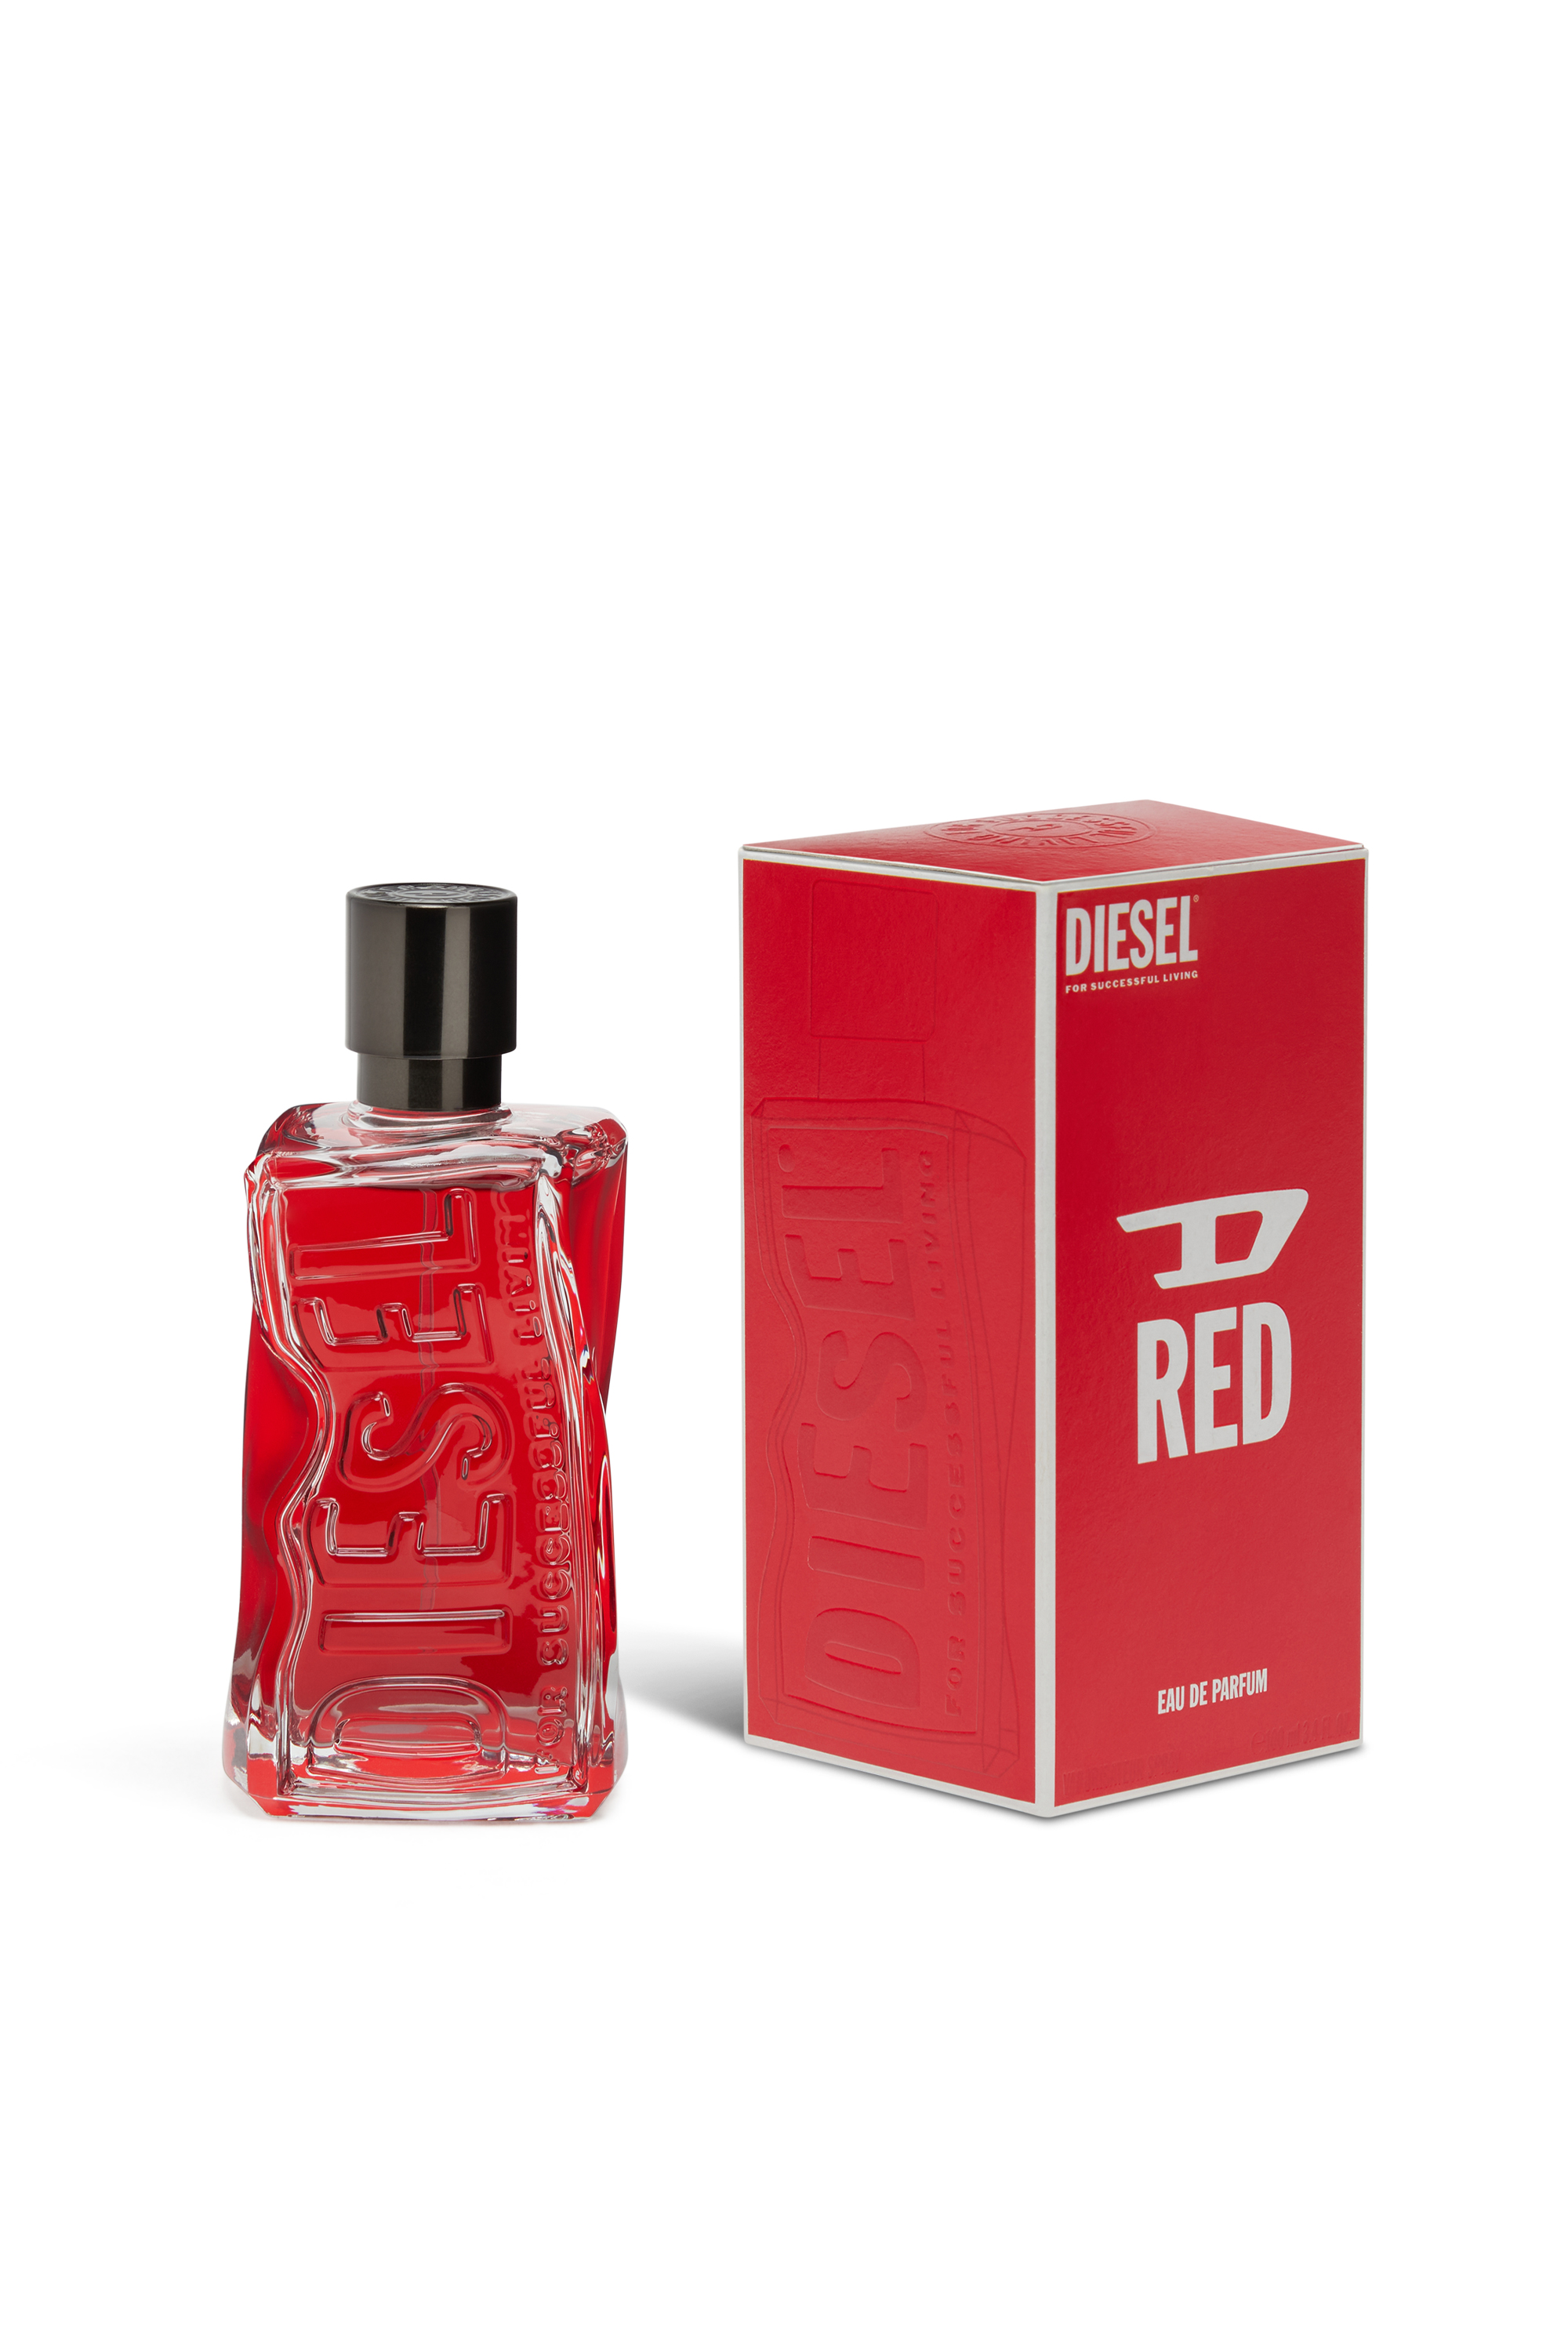 Diesel - D RED 50 ML, Rouge - Image 2